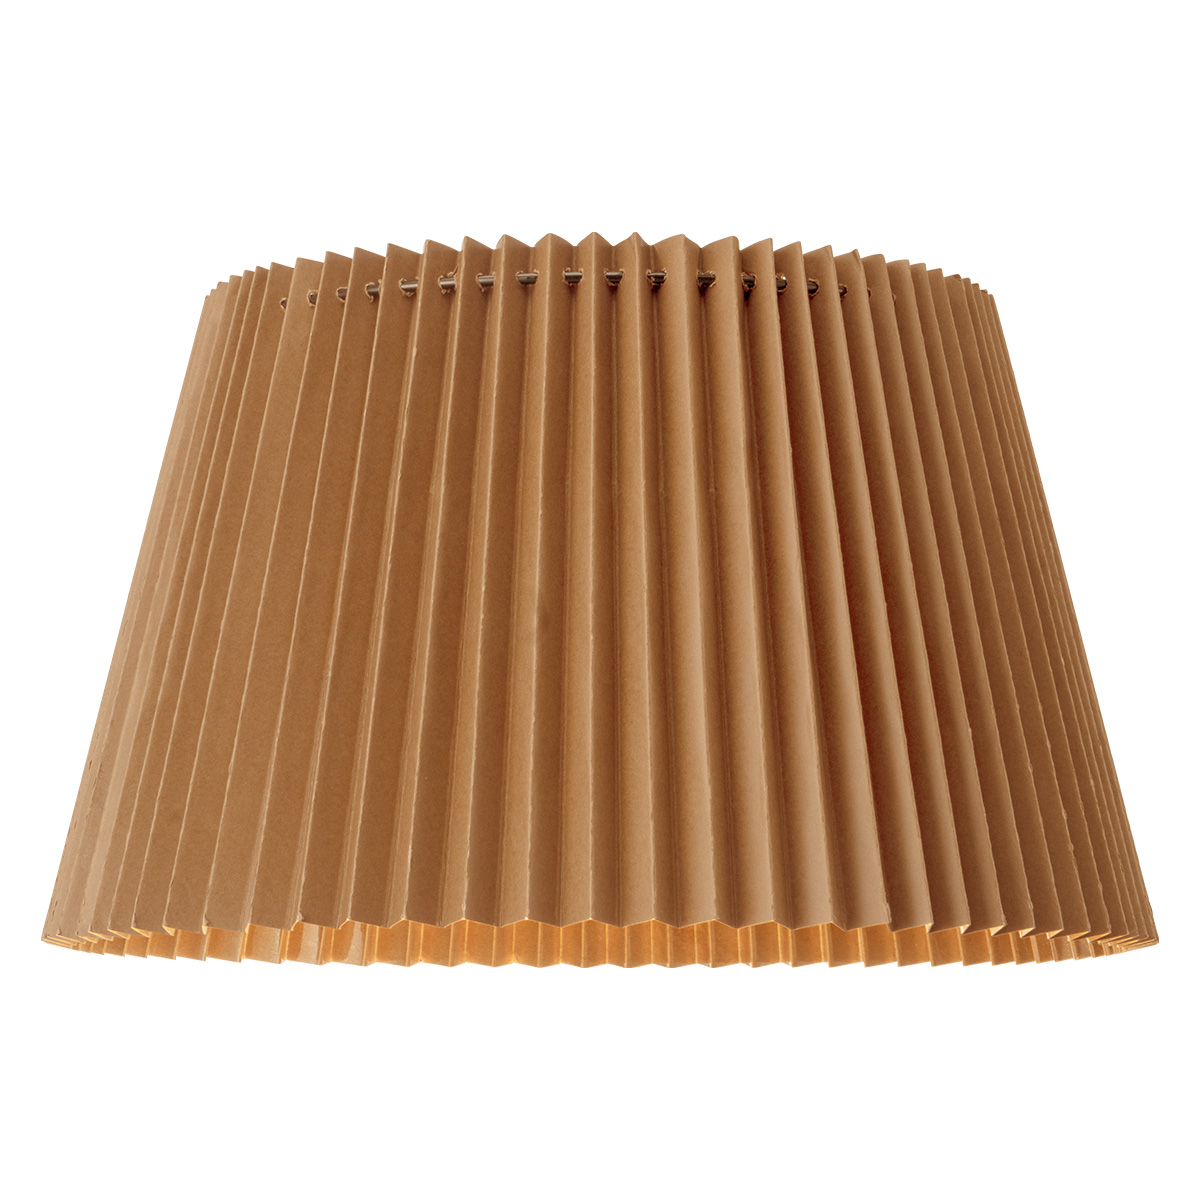 Tangla Lighting - Lampshade - metal and paper - khaki - taper - diameter 40cm - E27